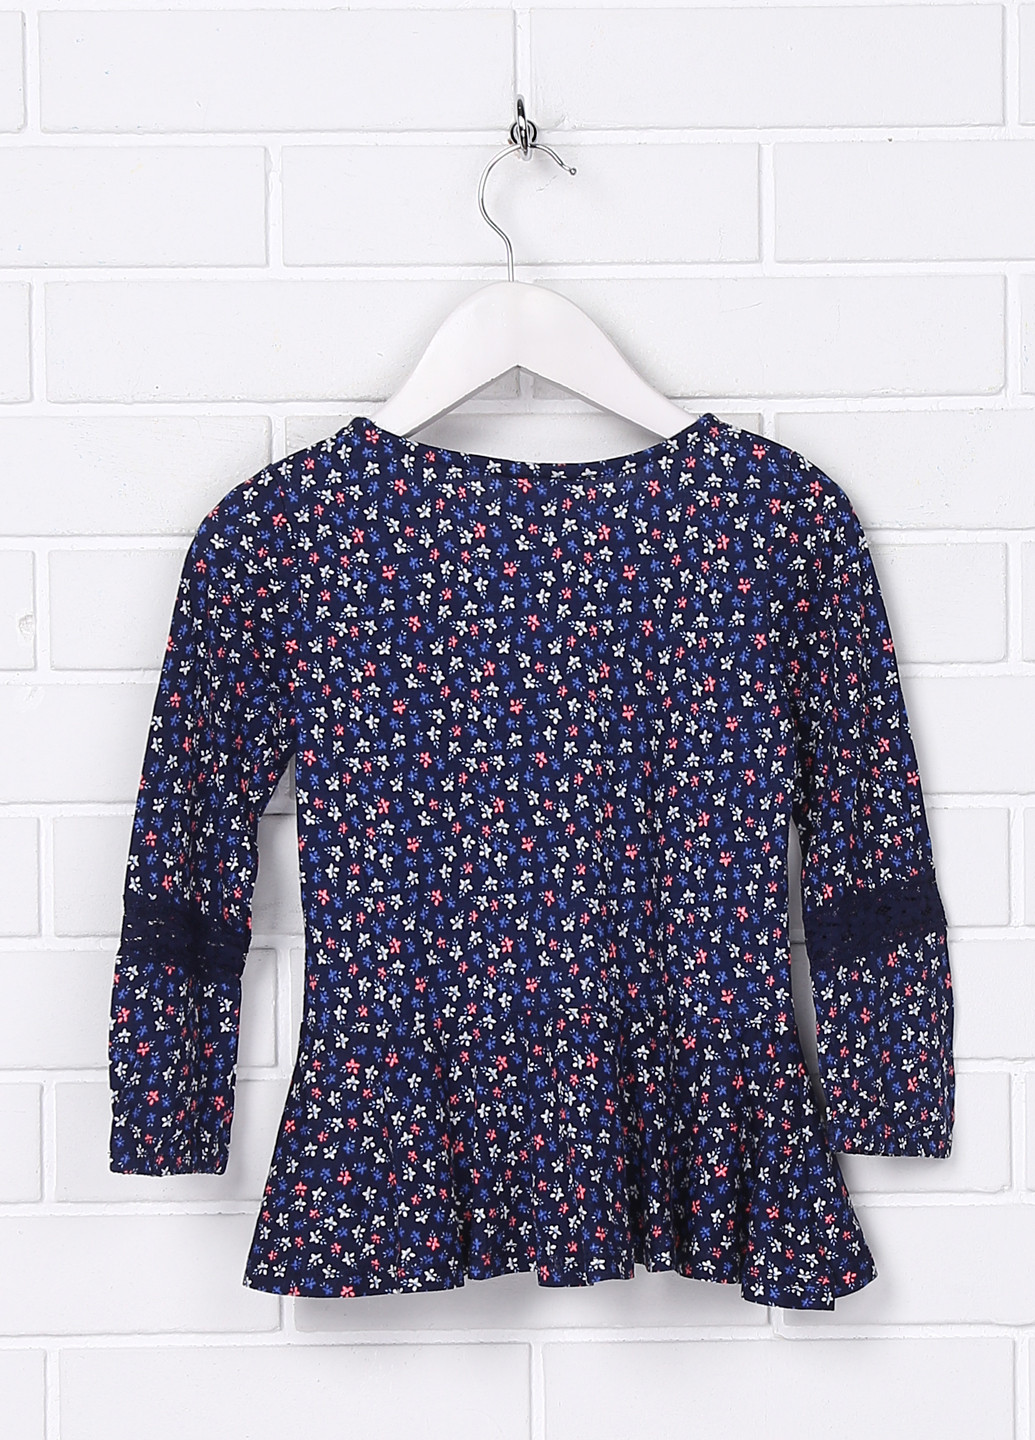 Темно-синяя цветочной расцветки блузка с длинным рукавом Topolino летняя